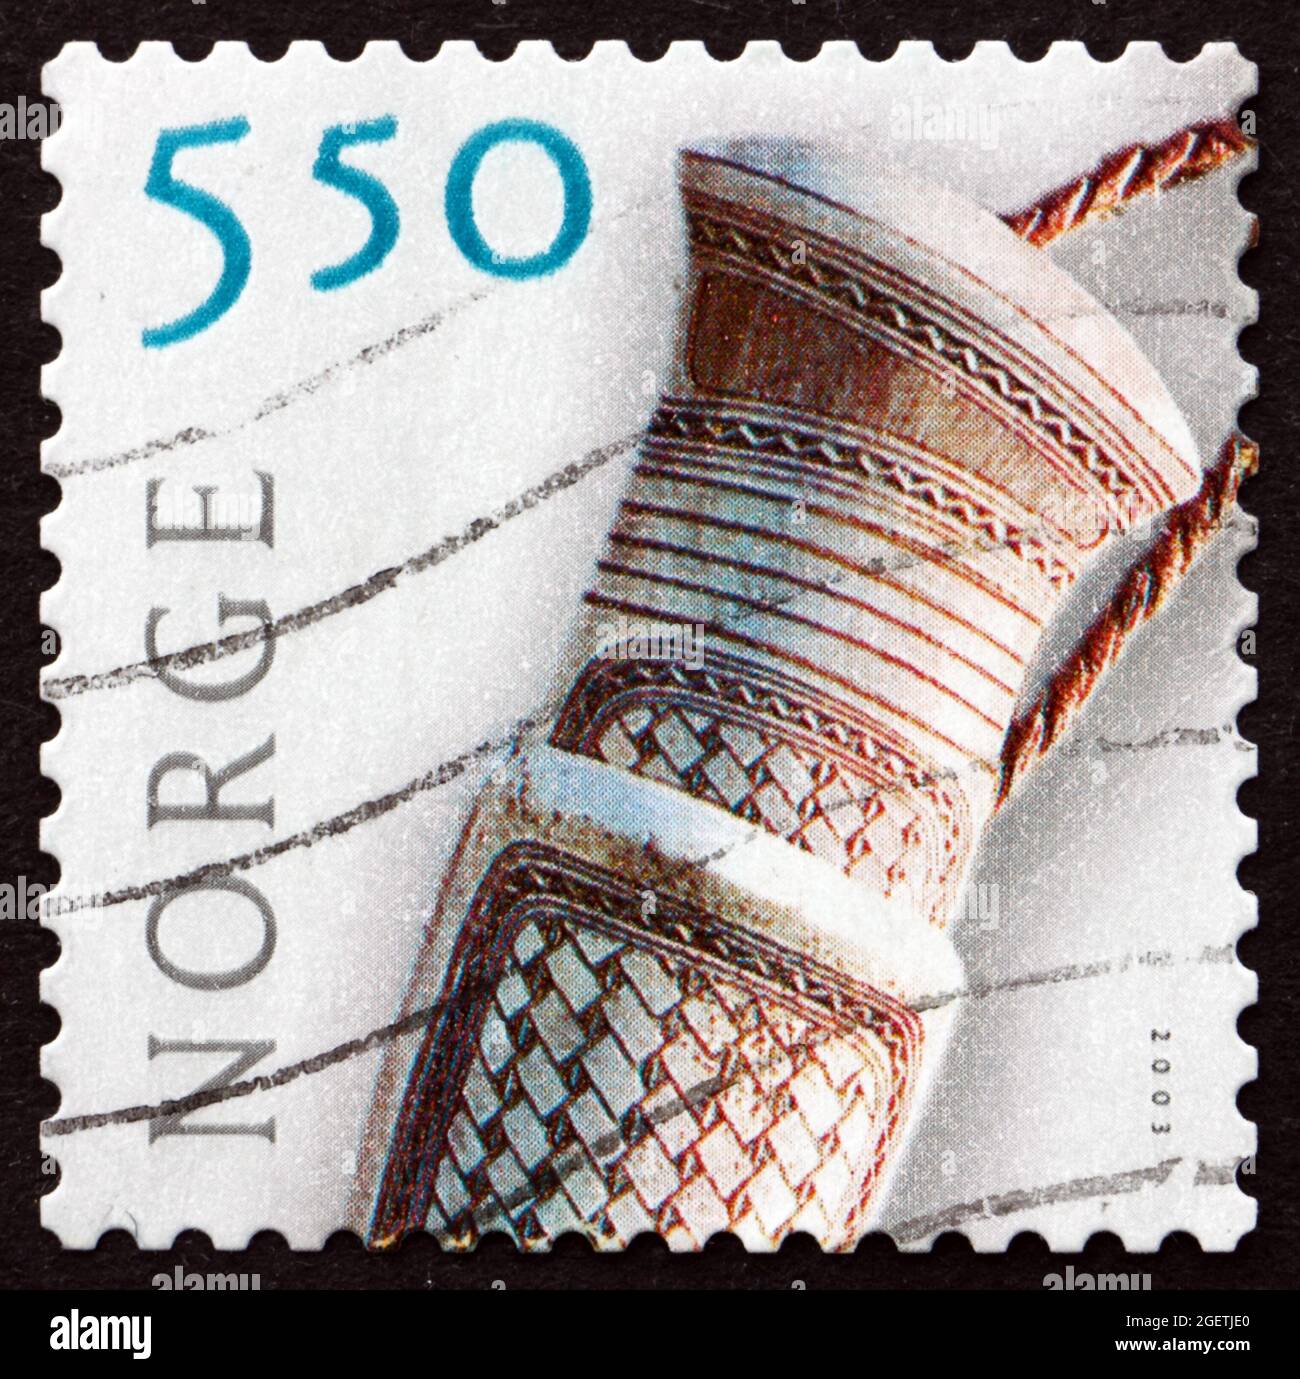 NORVÈGE - VERS 2003: Un timbre imprimé en Norvège montre Doudji poignée de couteau, artisanat traditionnel sami, vers 2003 Banque D'Images